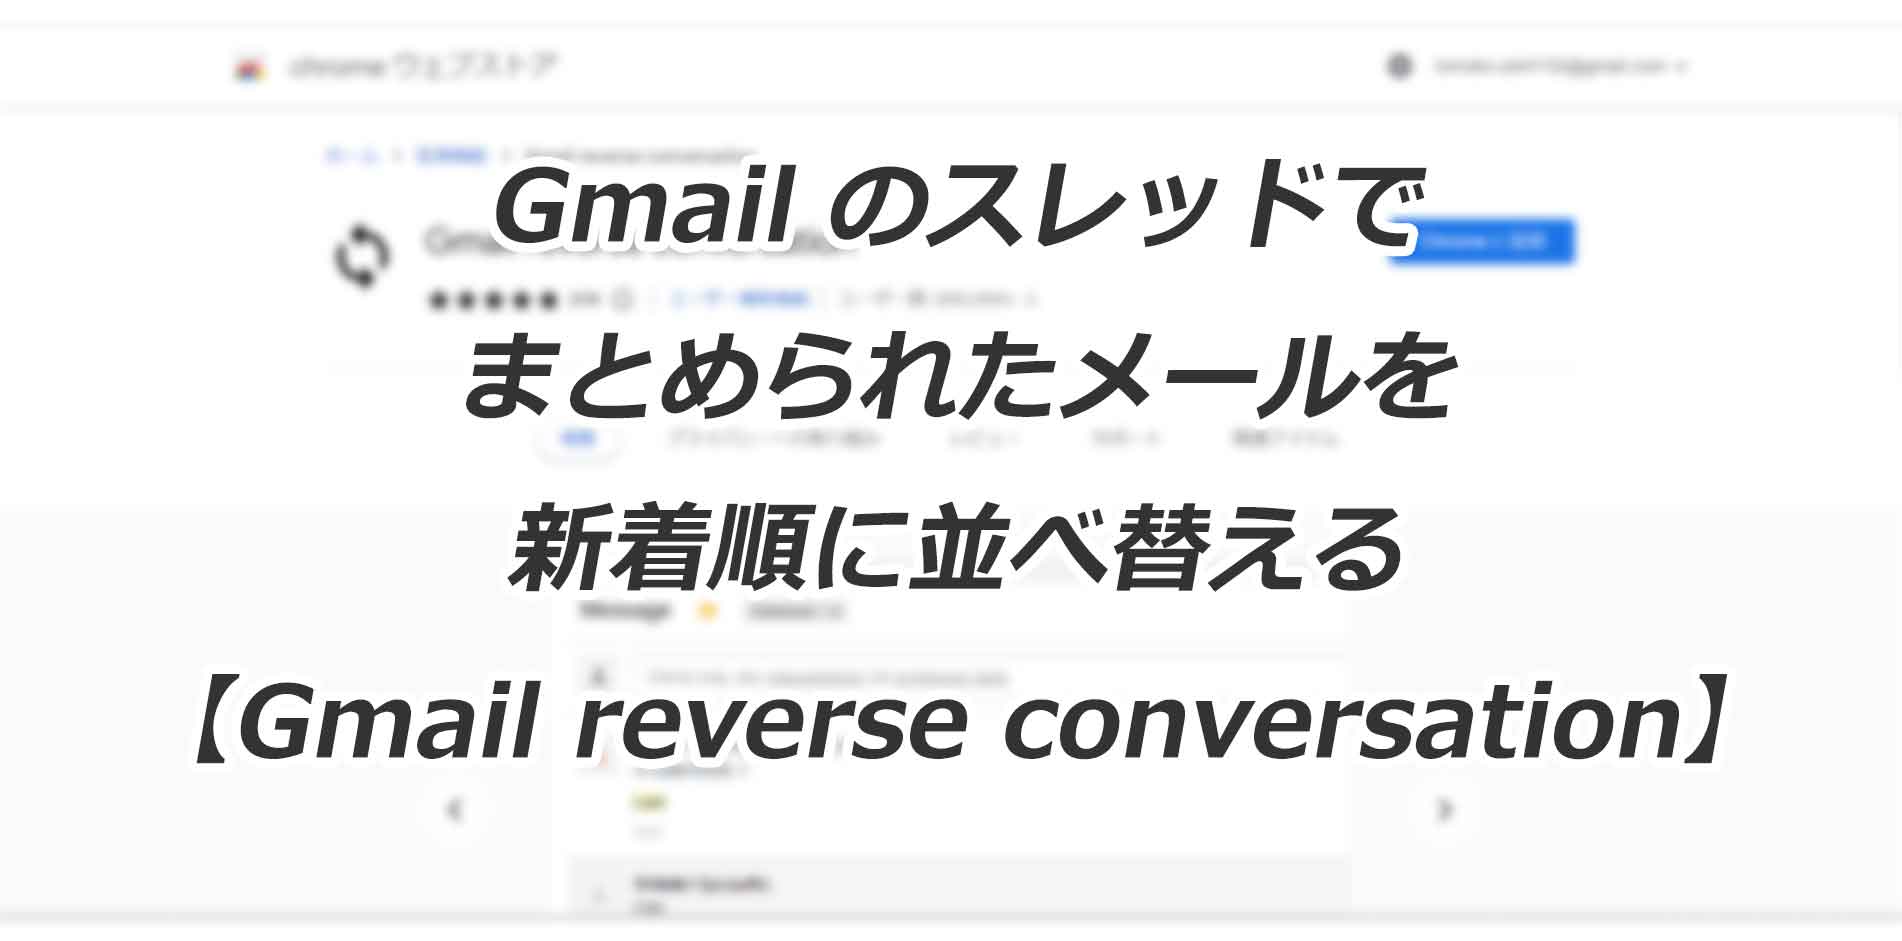 Gmailスレッド内のメールの並び順を新しいものから順に表示する Gmail reverse conversation